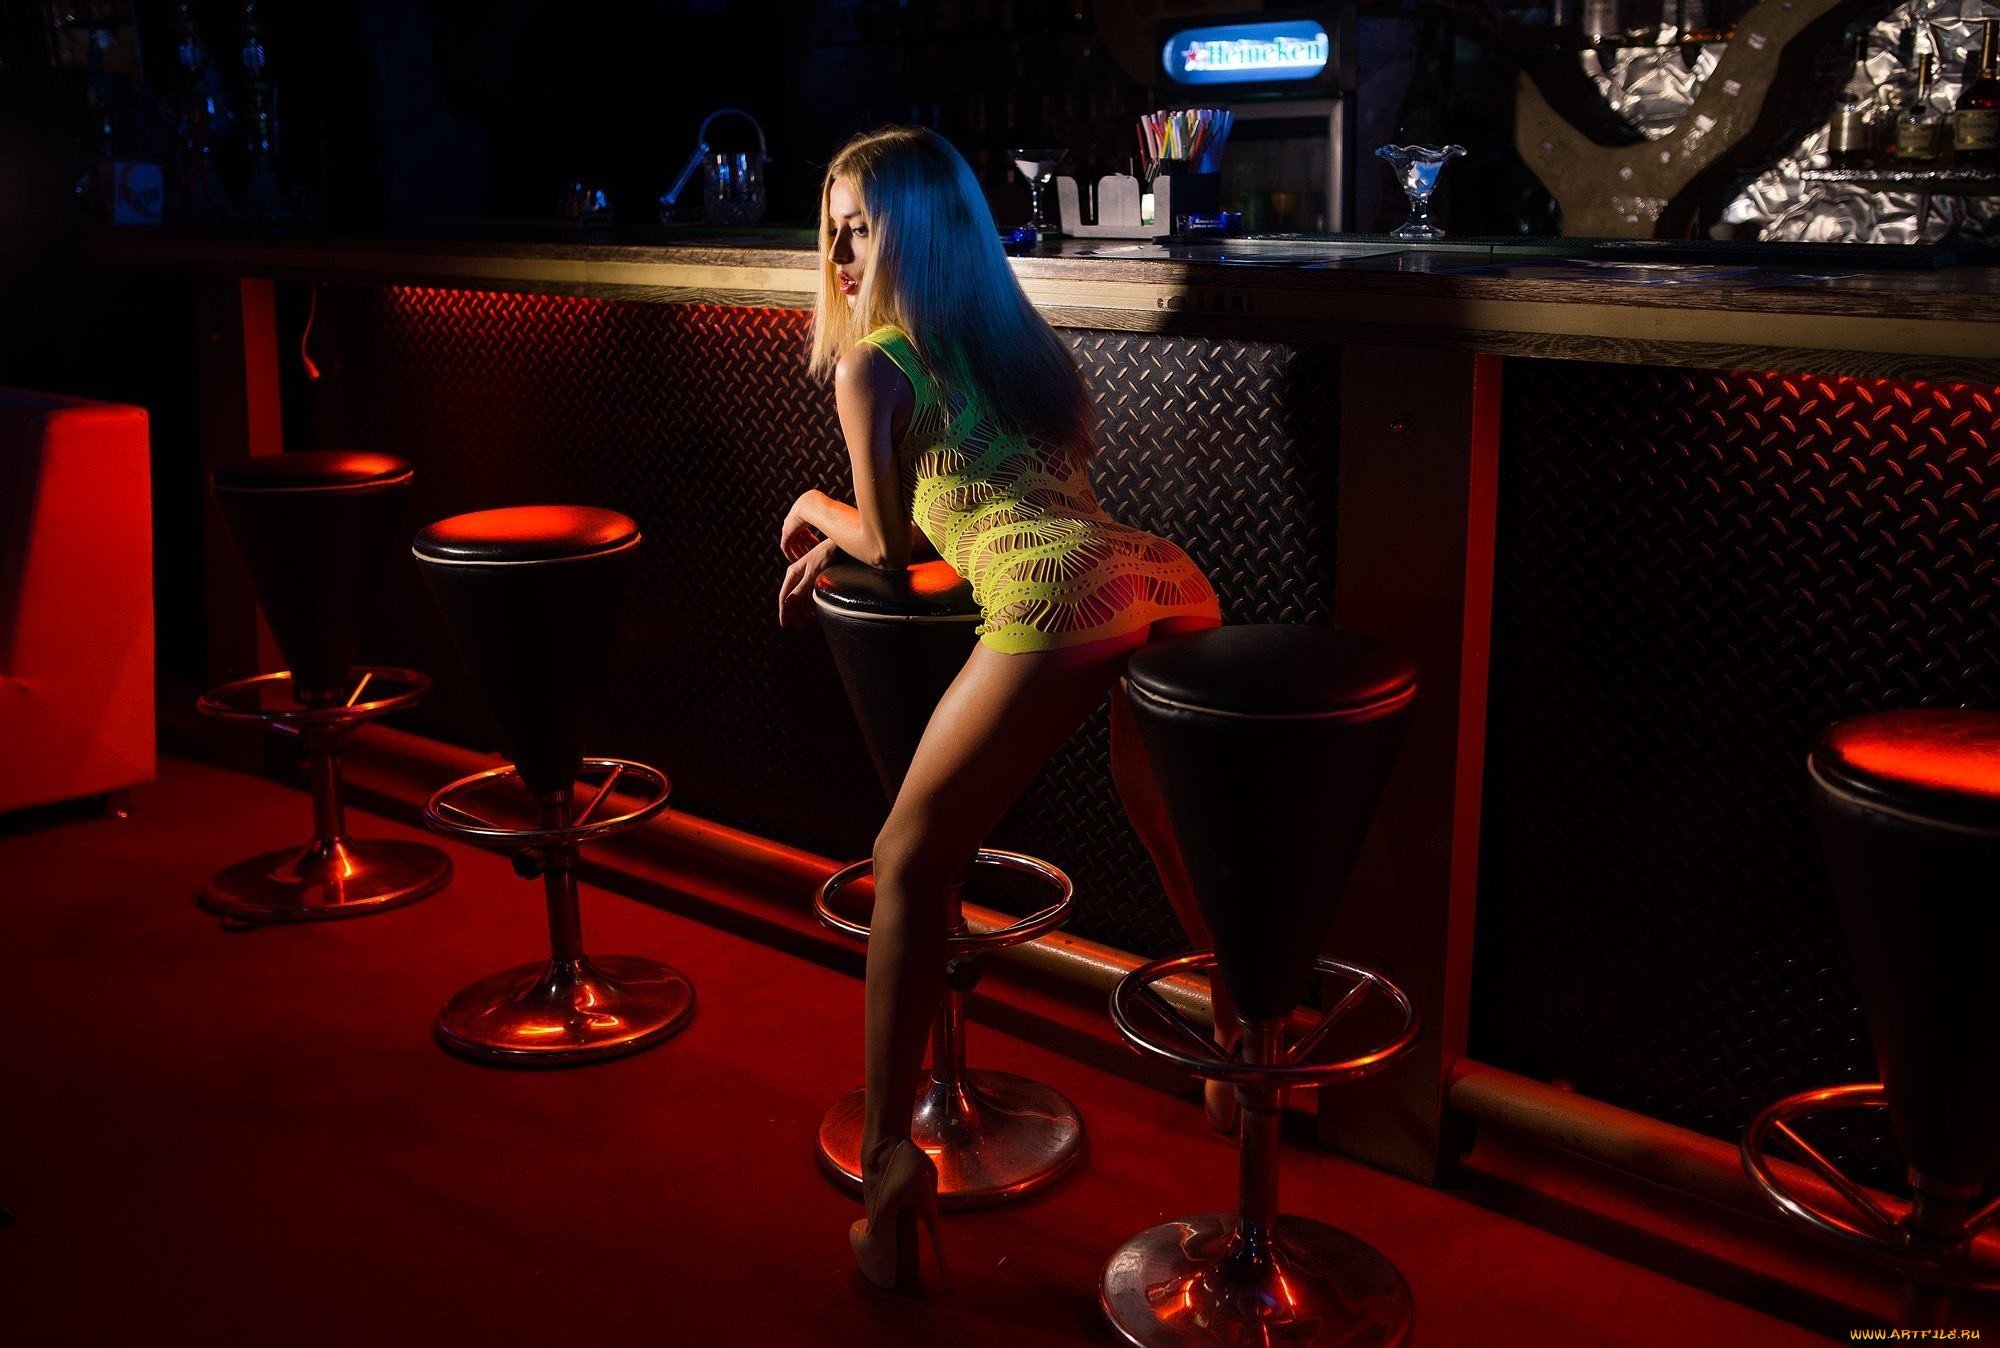 Ночной клуб поза. Девушка в баре. Фотосессия на барной стойке. Девушка у барной стойки. Девушка на барной стойке.